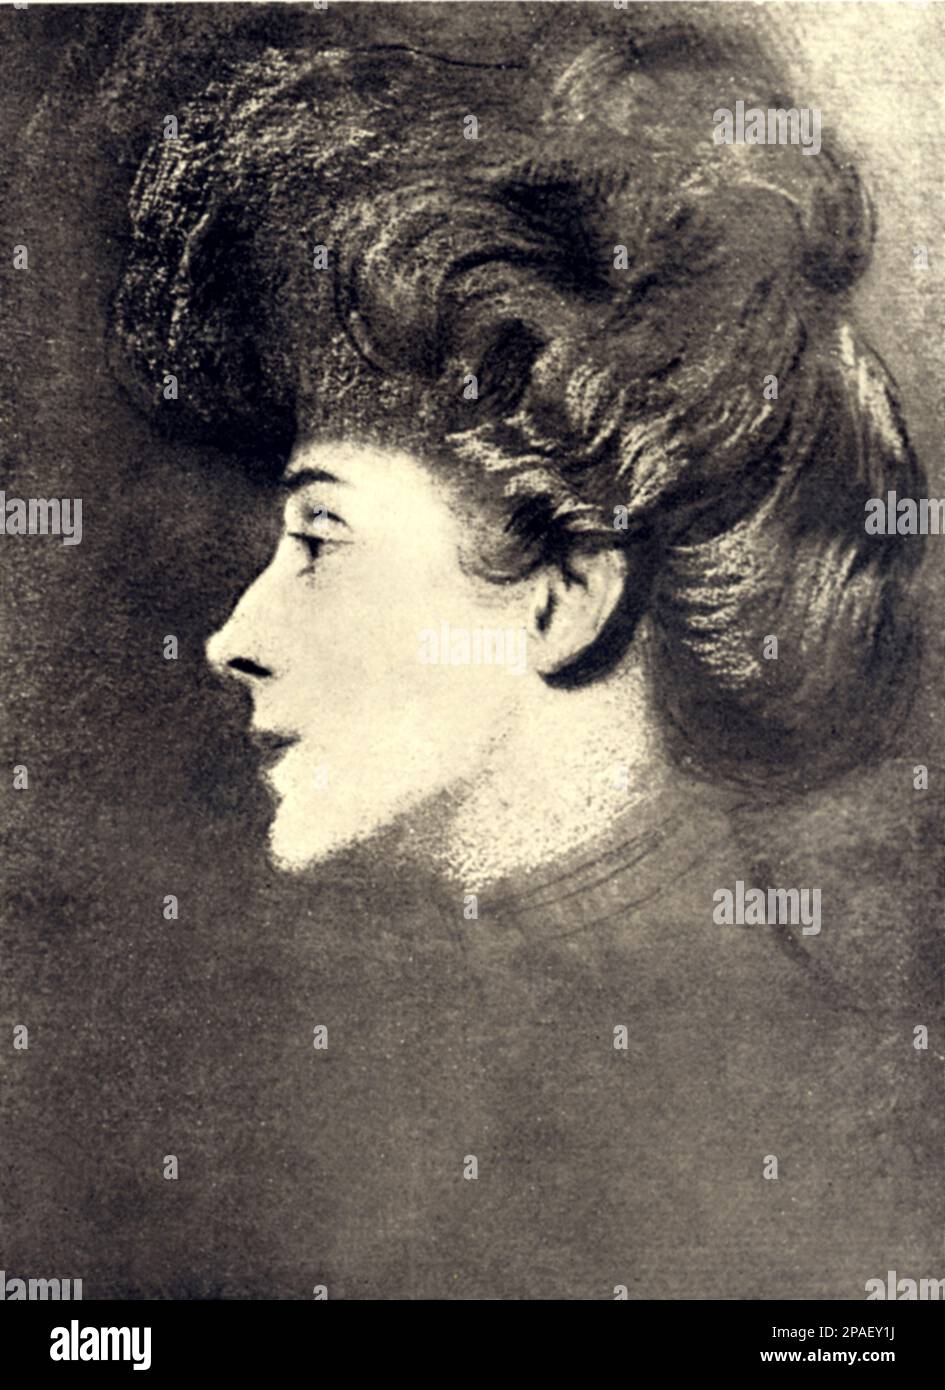 La princesse MARIA HARDOUIN Duchessa DEL GALLESE , mariée en 1883 avec le poète italien, homme politique et écrivain GABRIELE d'ANNUNZIO (Pescara 1863 - Gardone Riviera 1938 ) . Portraied à Paris par son amant , le peintre hispano-français ANTONIO DE LA GANDARA . - Profilo - profil - portrait - ritratto - Dannunzio - d'ANNUNZIO - - principessa - nobili - noblesse - Nogiltà italiana --- ARCHIVIO GBB Banque D'Images